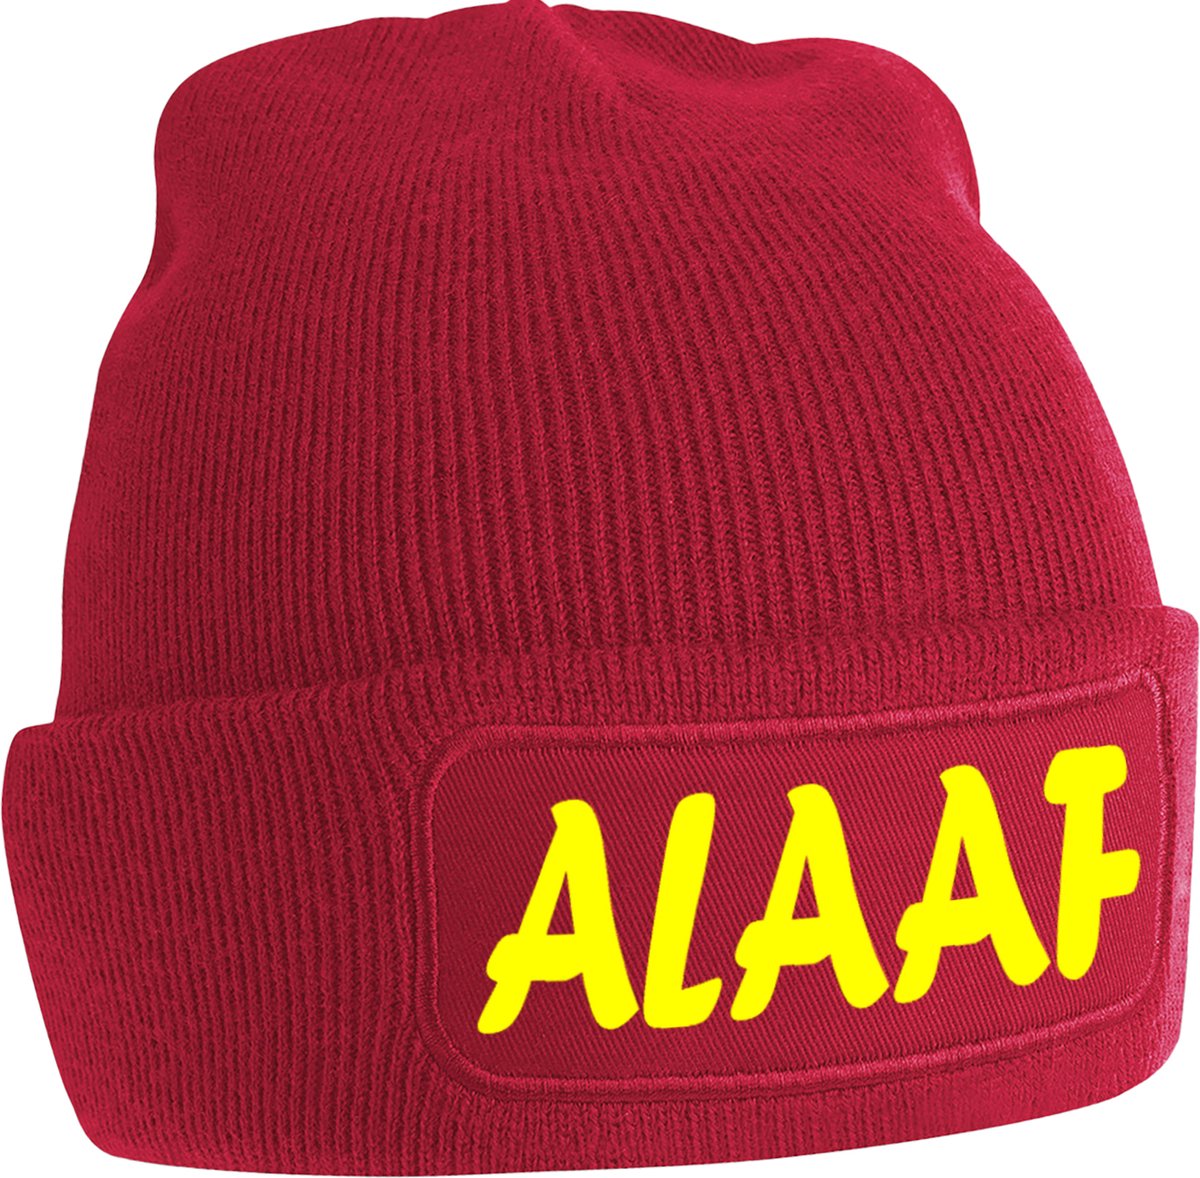 ALAAF uniseks muts - Rood met gele tekst - Beanie - One Size - Grappige teksten | designs - Original Kwoots - Wintersport - Aprés ski muts - Carnaval - Begroeting